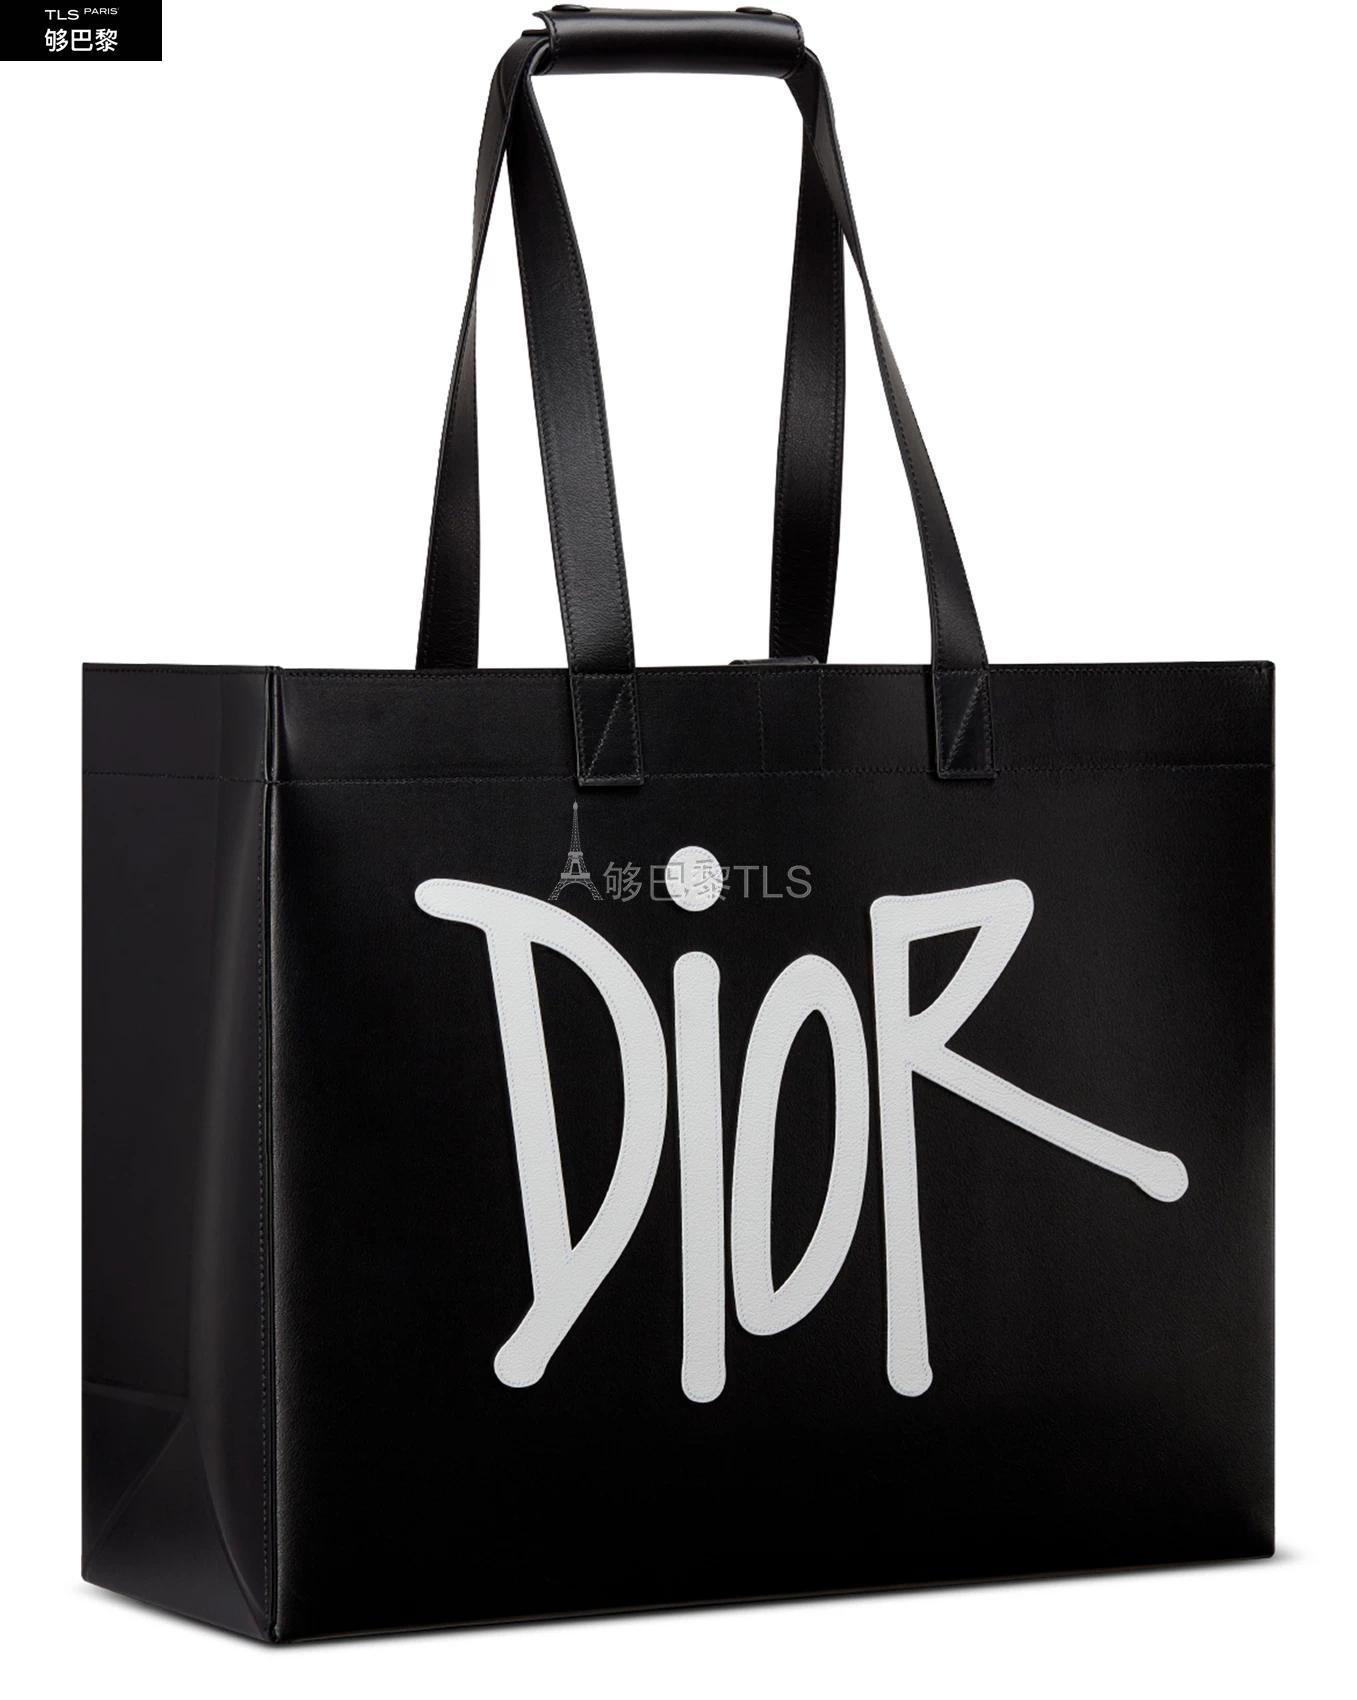 【包邮包税】 DIOR迪奥 21年春夏 男士 手提包 D-Dior DIOR AND SHAWN 提包 DIOBSMKXBCKZZZZZ00 预定商品1-3周发货